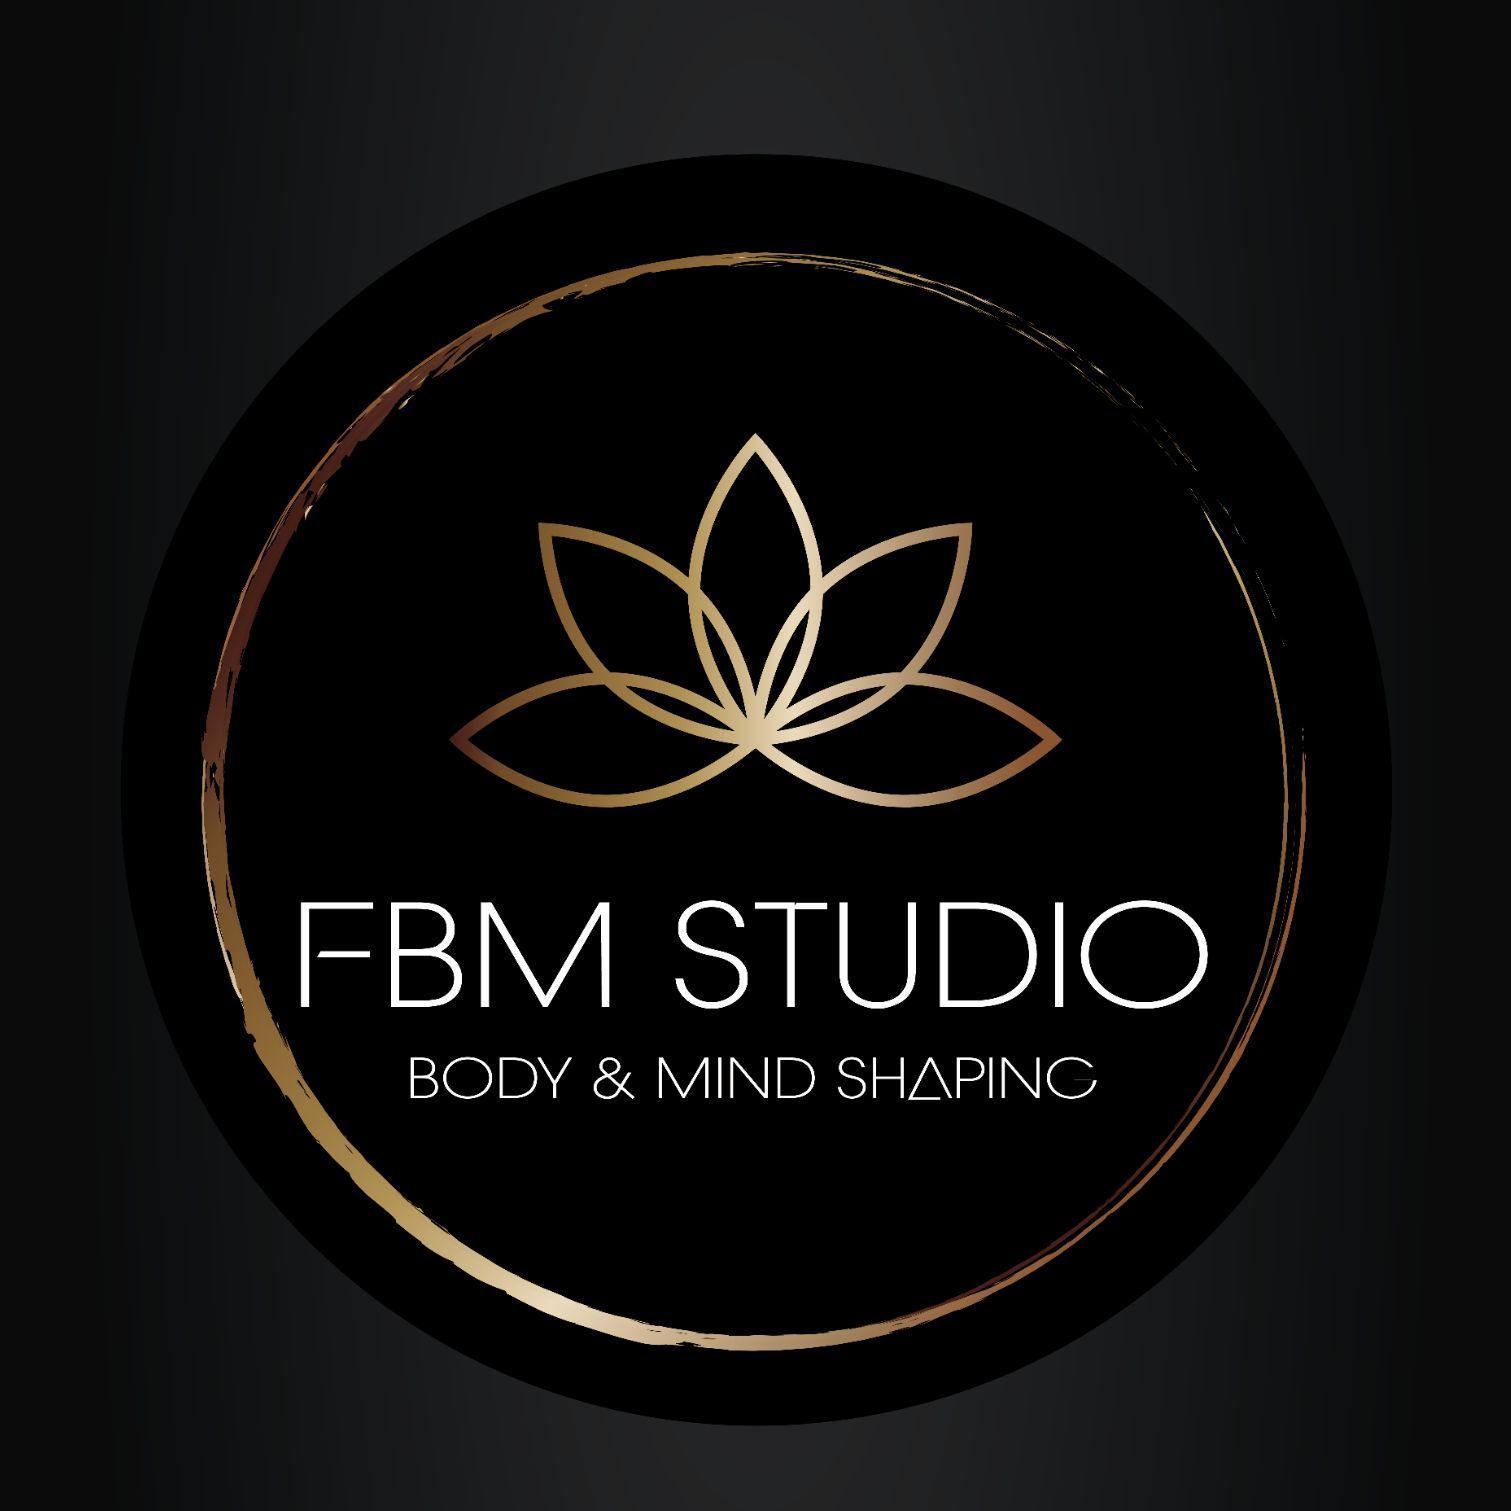 FBM Studio - FBM Studio Praga Południe "Już otwarte"